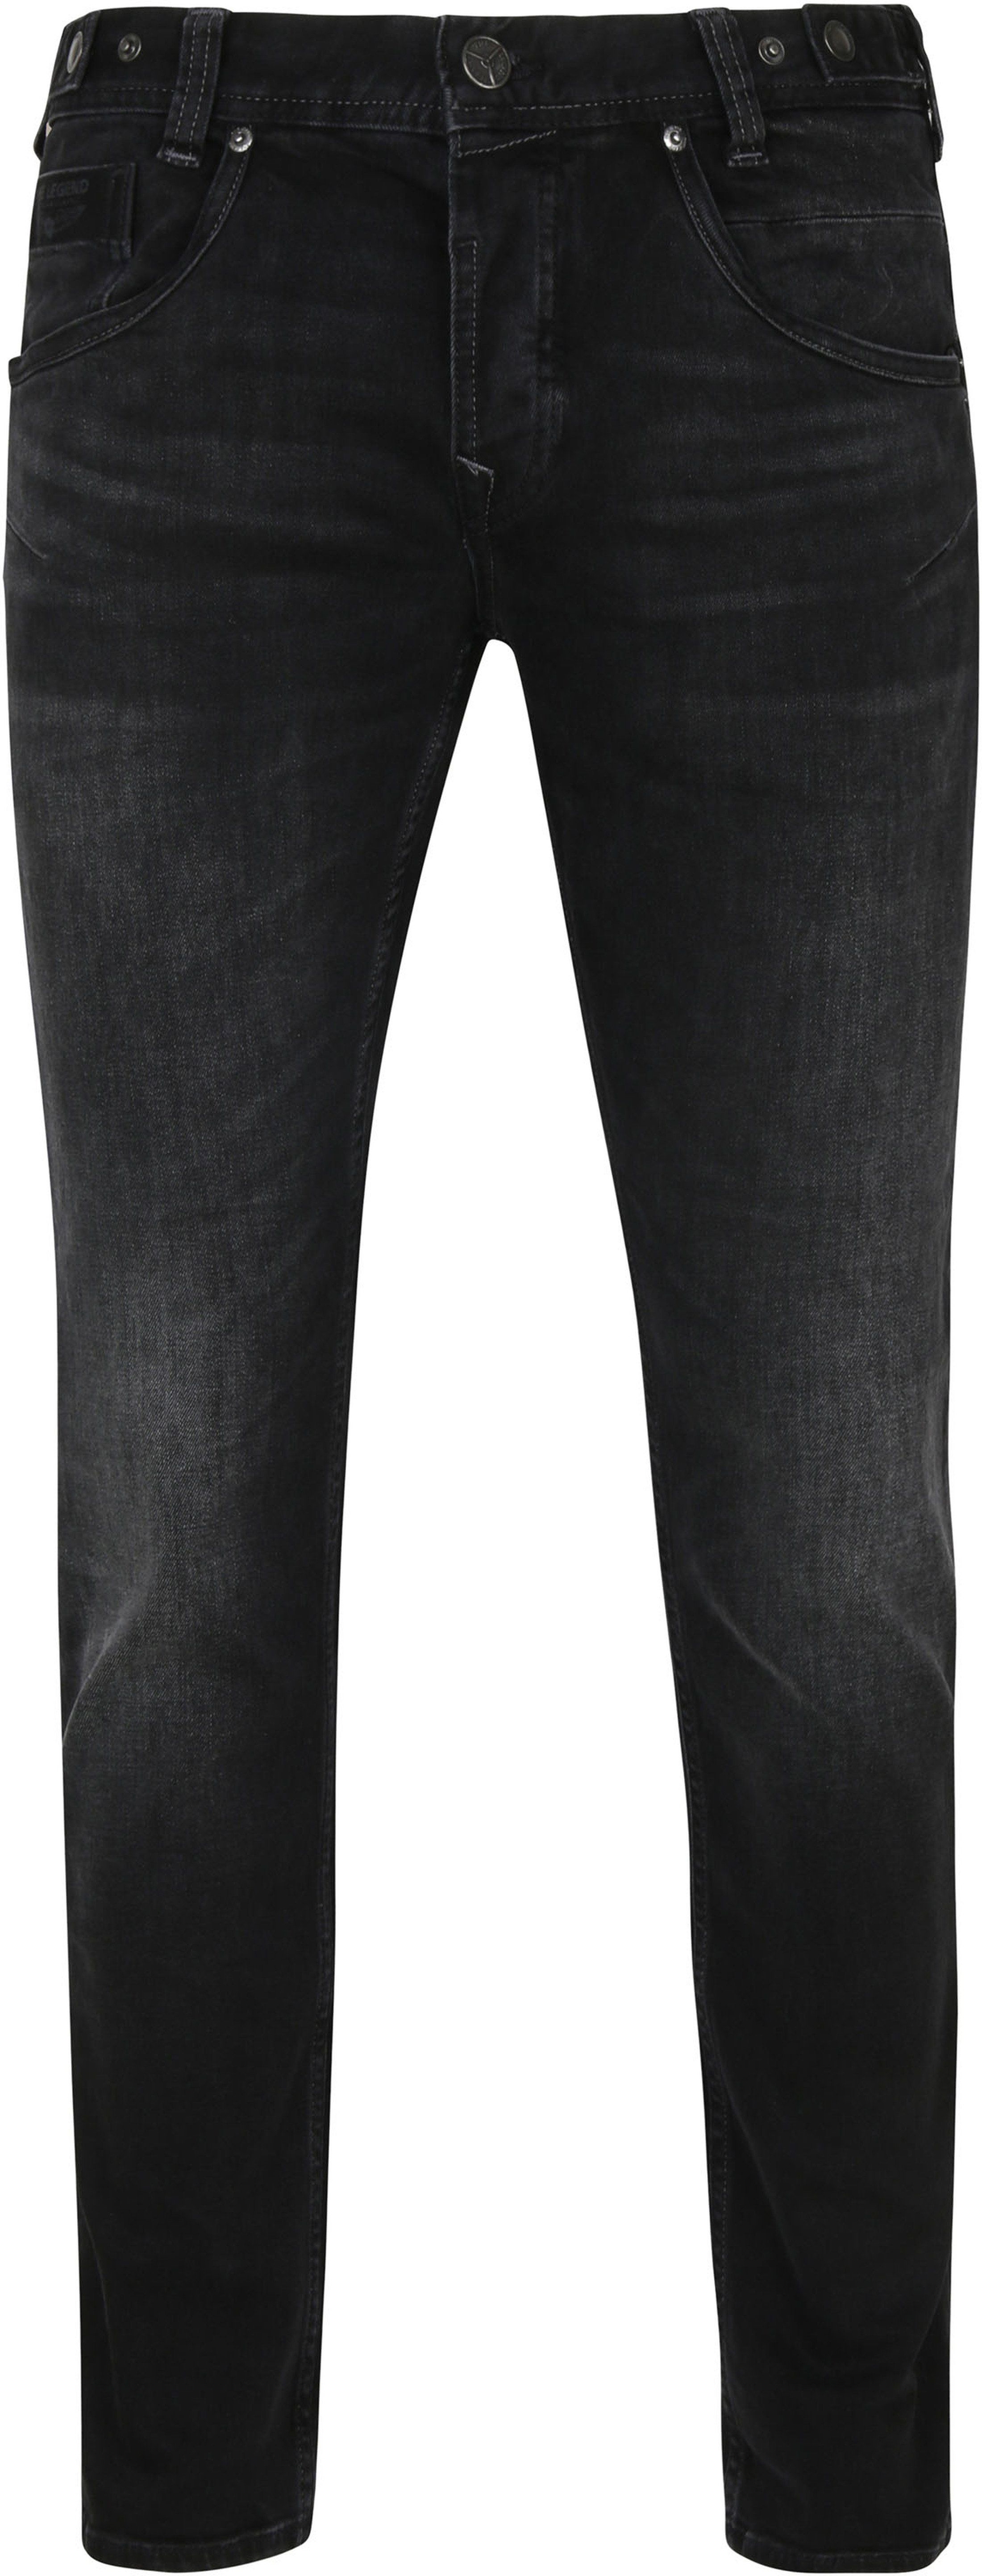 PME Legend Skyhawk Jeans Black size W 32